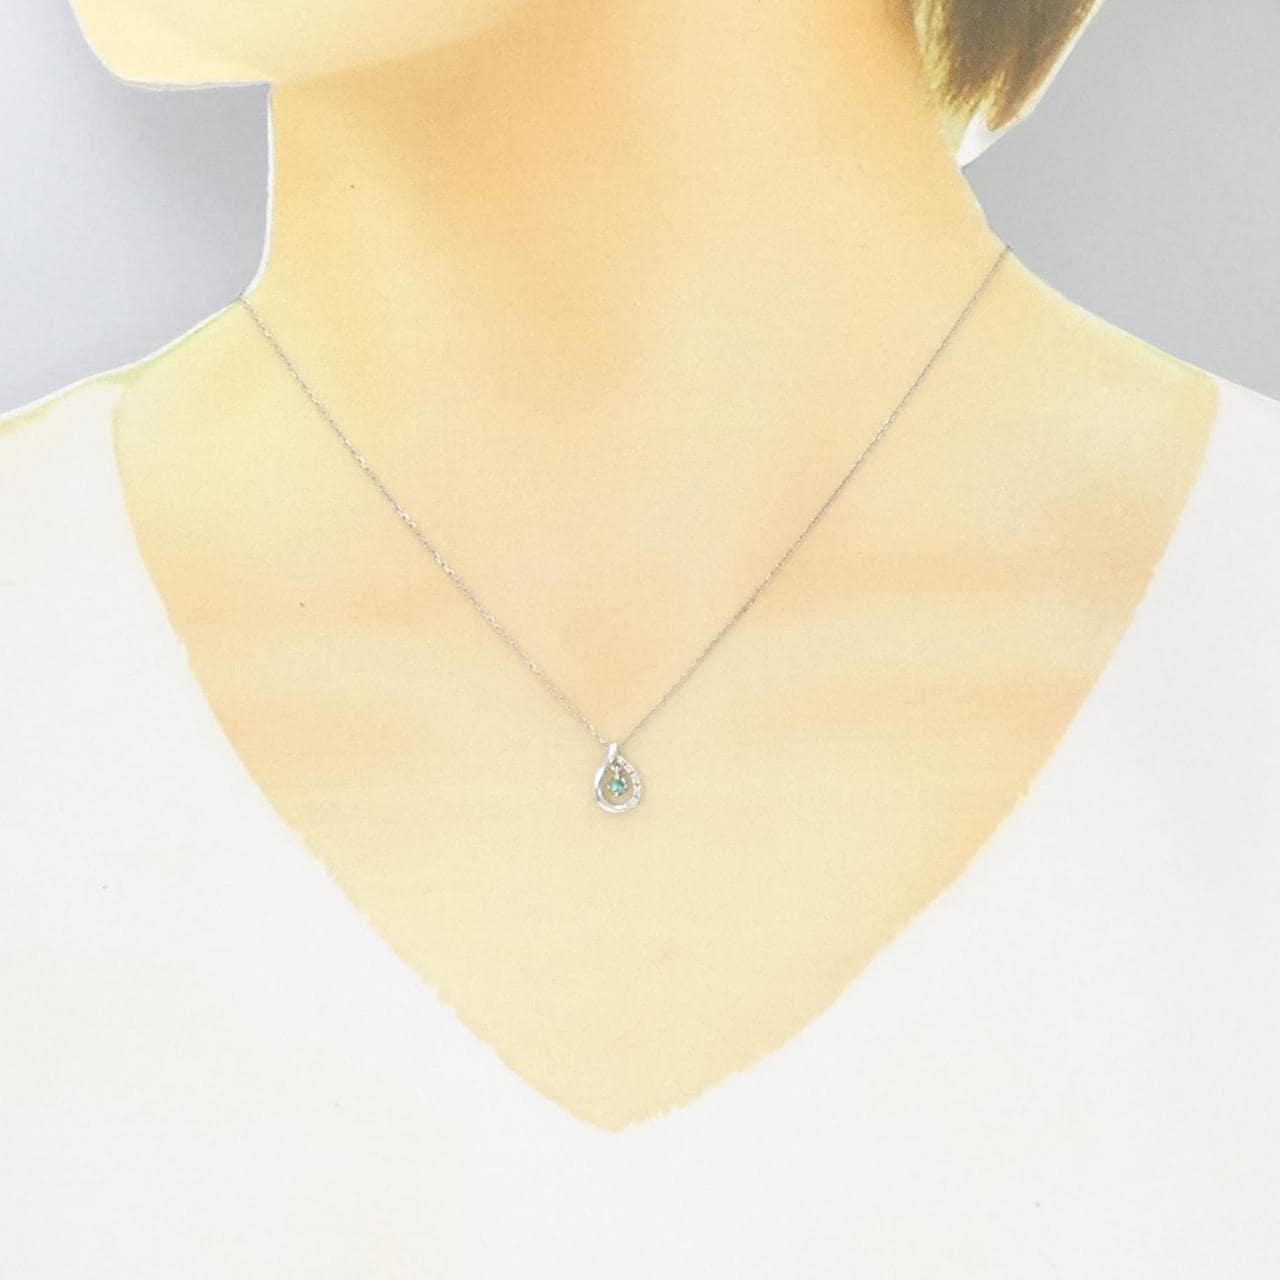 K18WG Tourmaline necklace 0.05CT